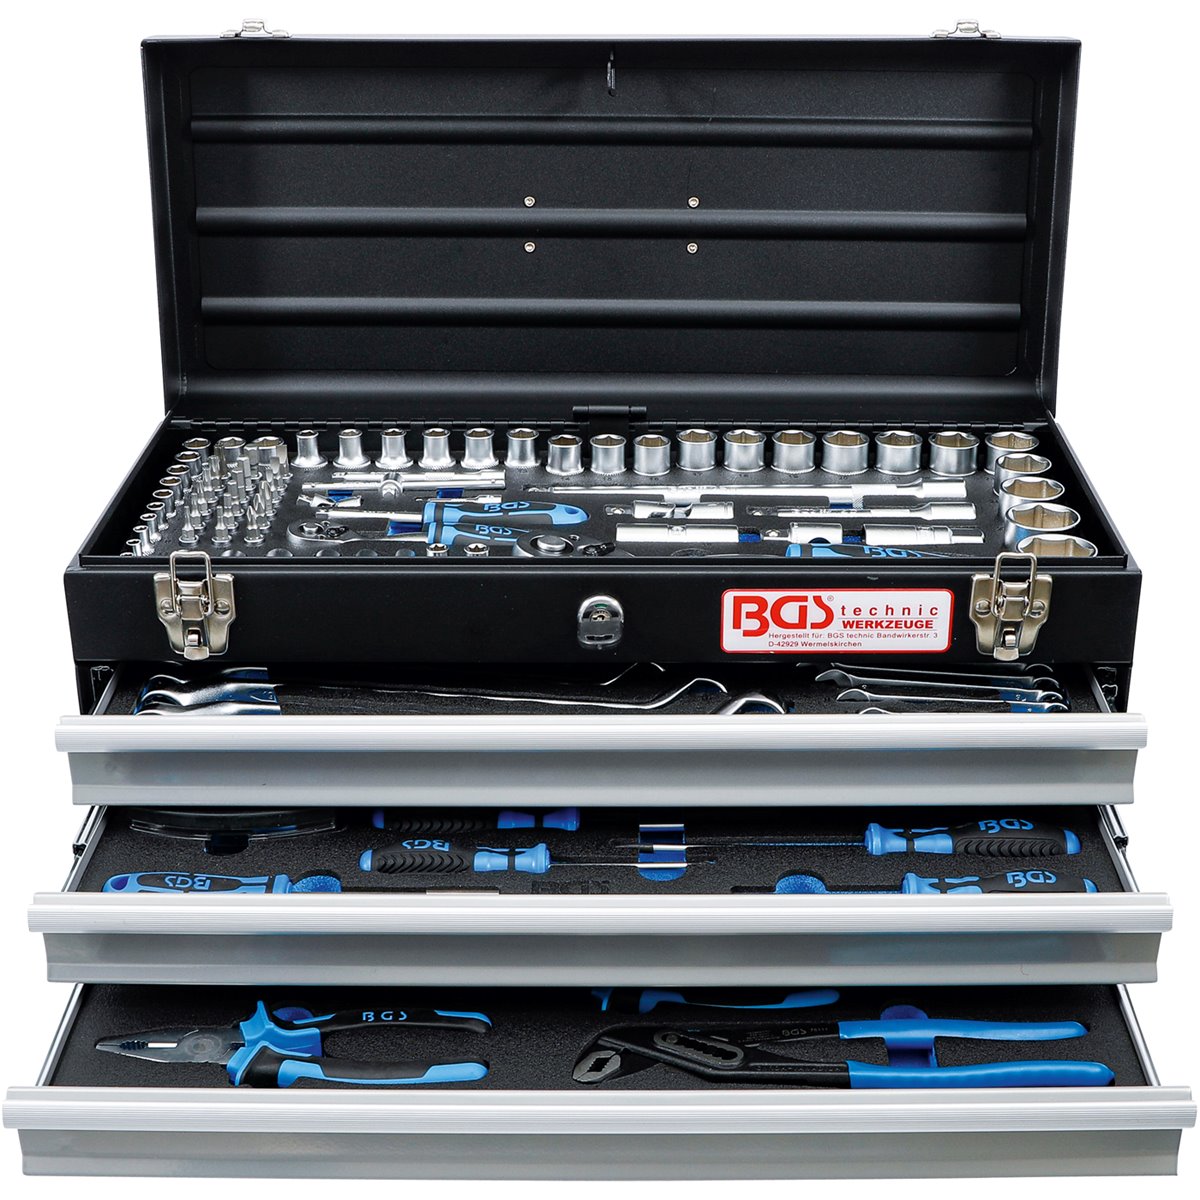 BGS 3318 Metall-Werkzeugkoffer mit 143 Werkzeugen 143 Werkzeugen |  Steckschlüssel-Programm | Werkstatt-Aktion | BGS technic | Marken |  toolaro.de | Werkzeug-Shop